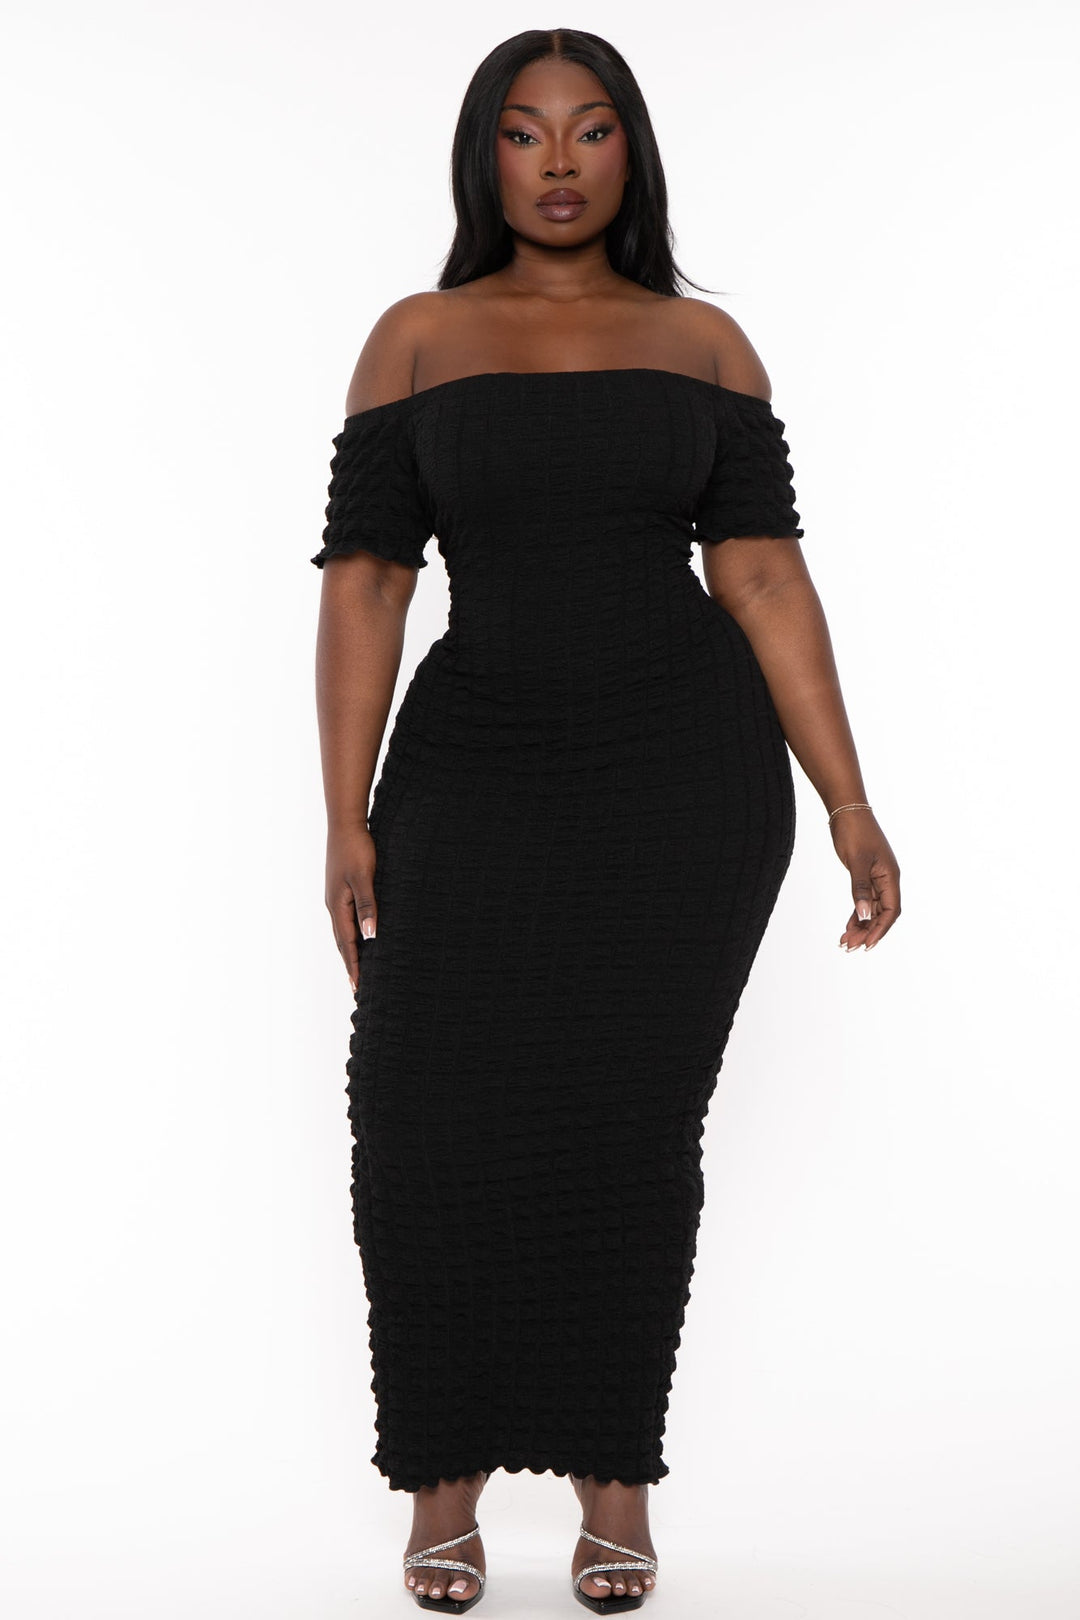 Curvy Sense Dresses 1X / Black Plus Size Arlissa Tube Maxi Dress - Black